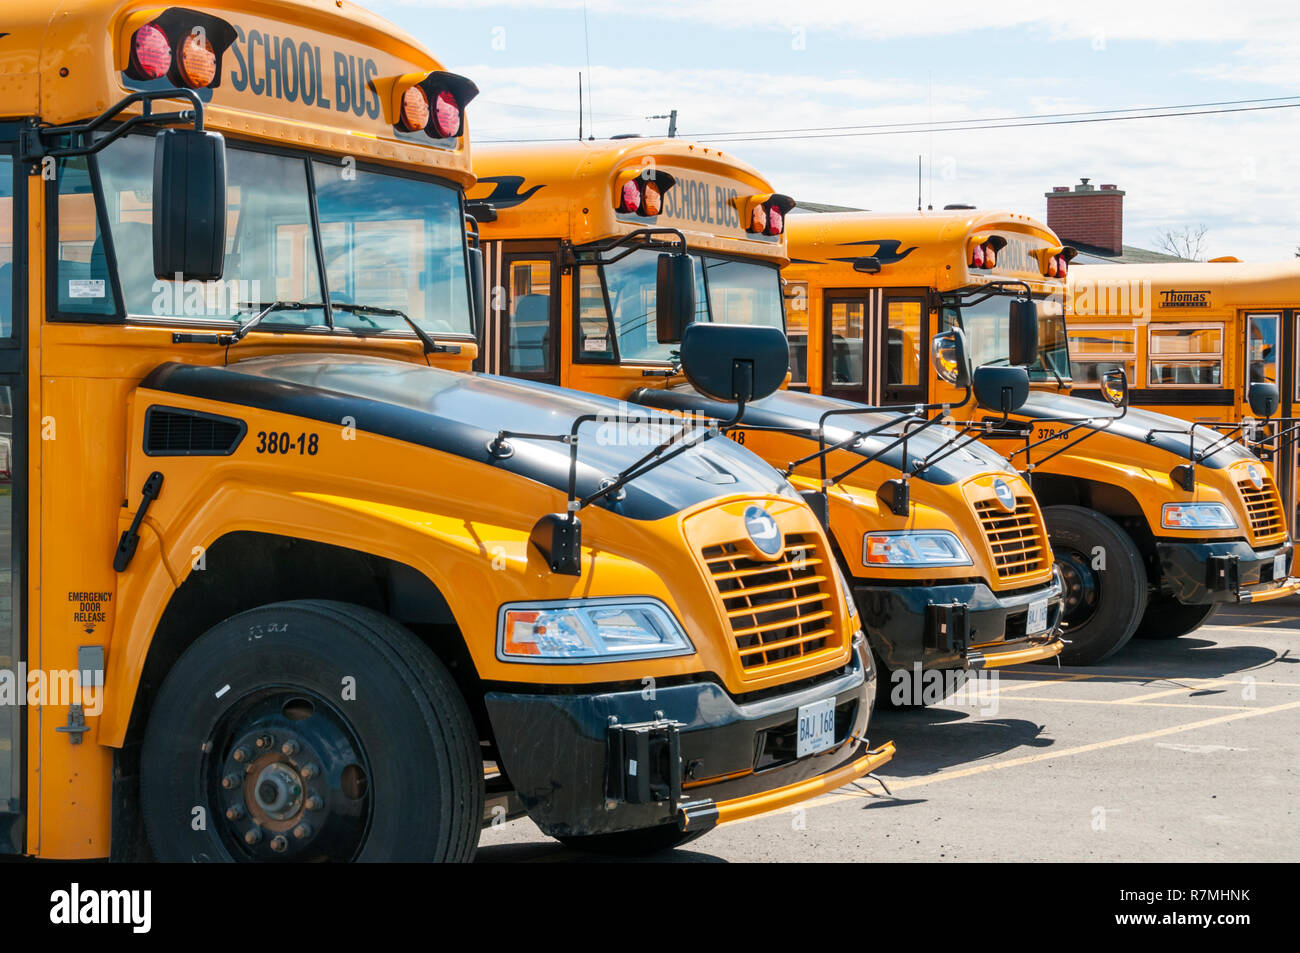 Una línea de autobuses amarillos escolares estacionados. Foto de stock